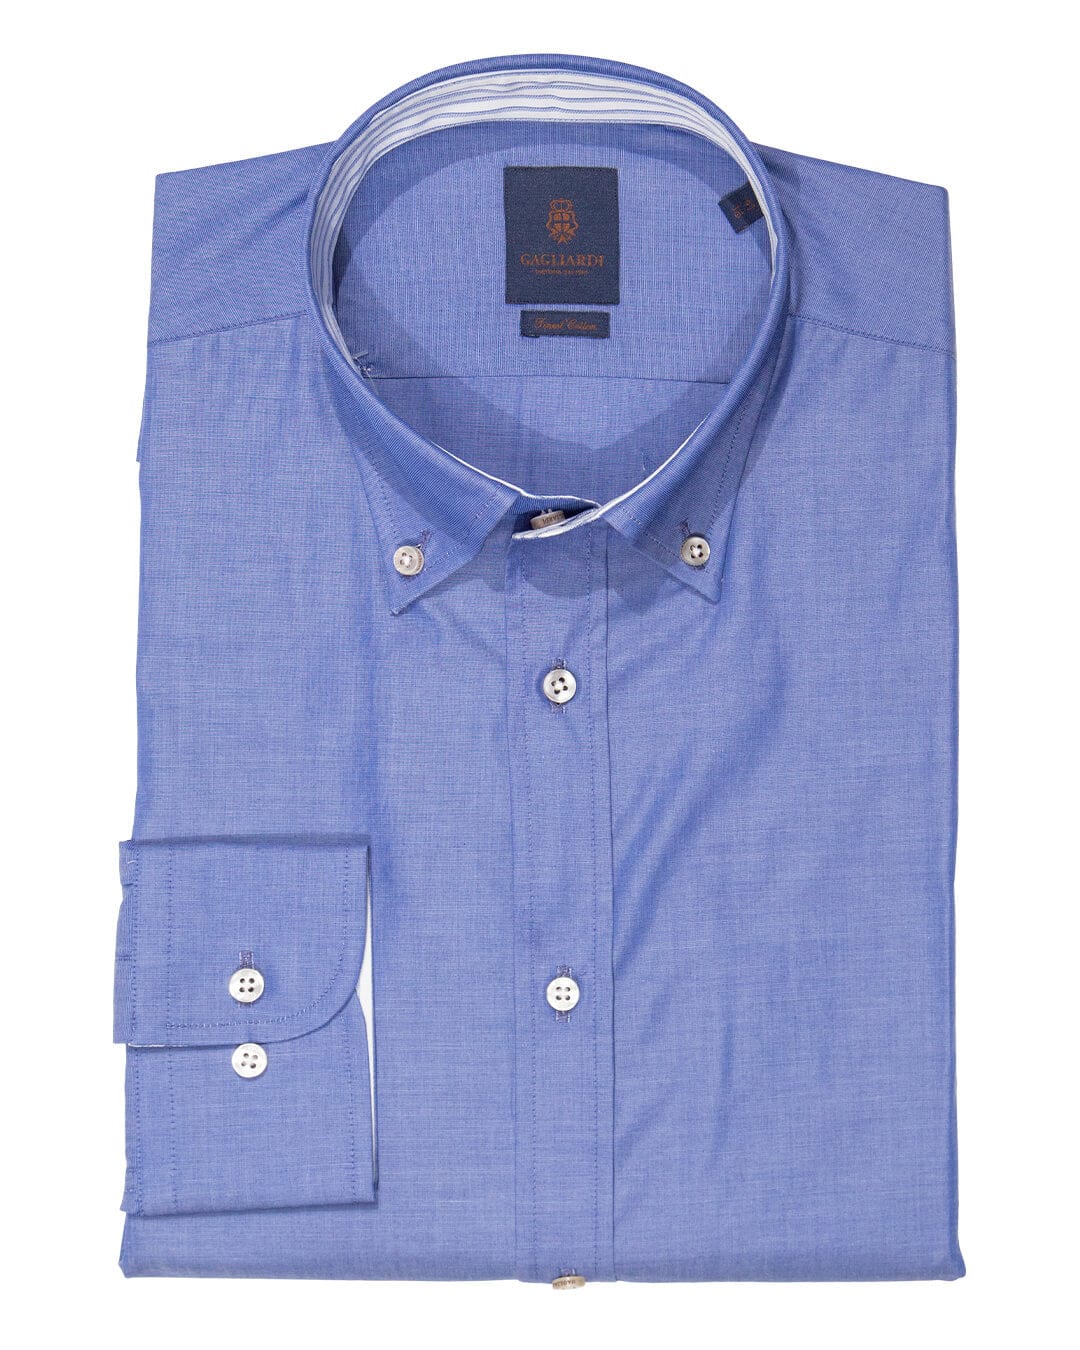 Gagliardi Shirts Gagliardi Slim Fit Blue End-On-End Button-Down Shirt